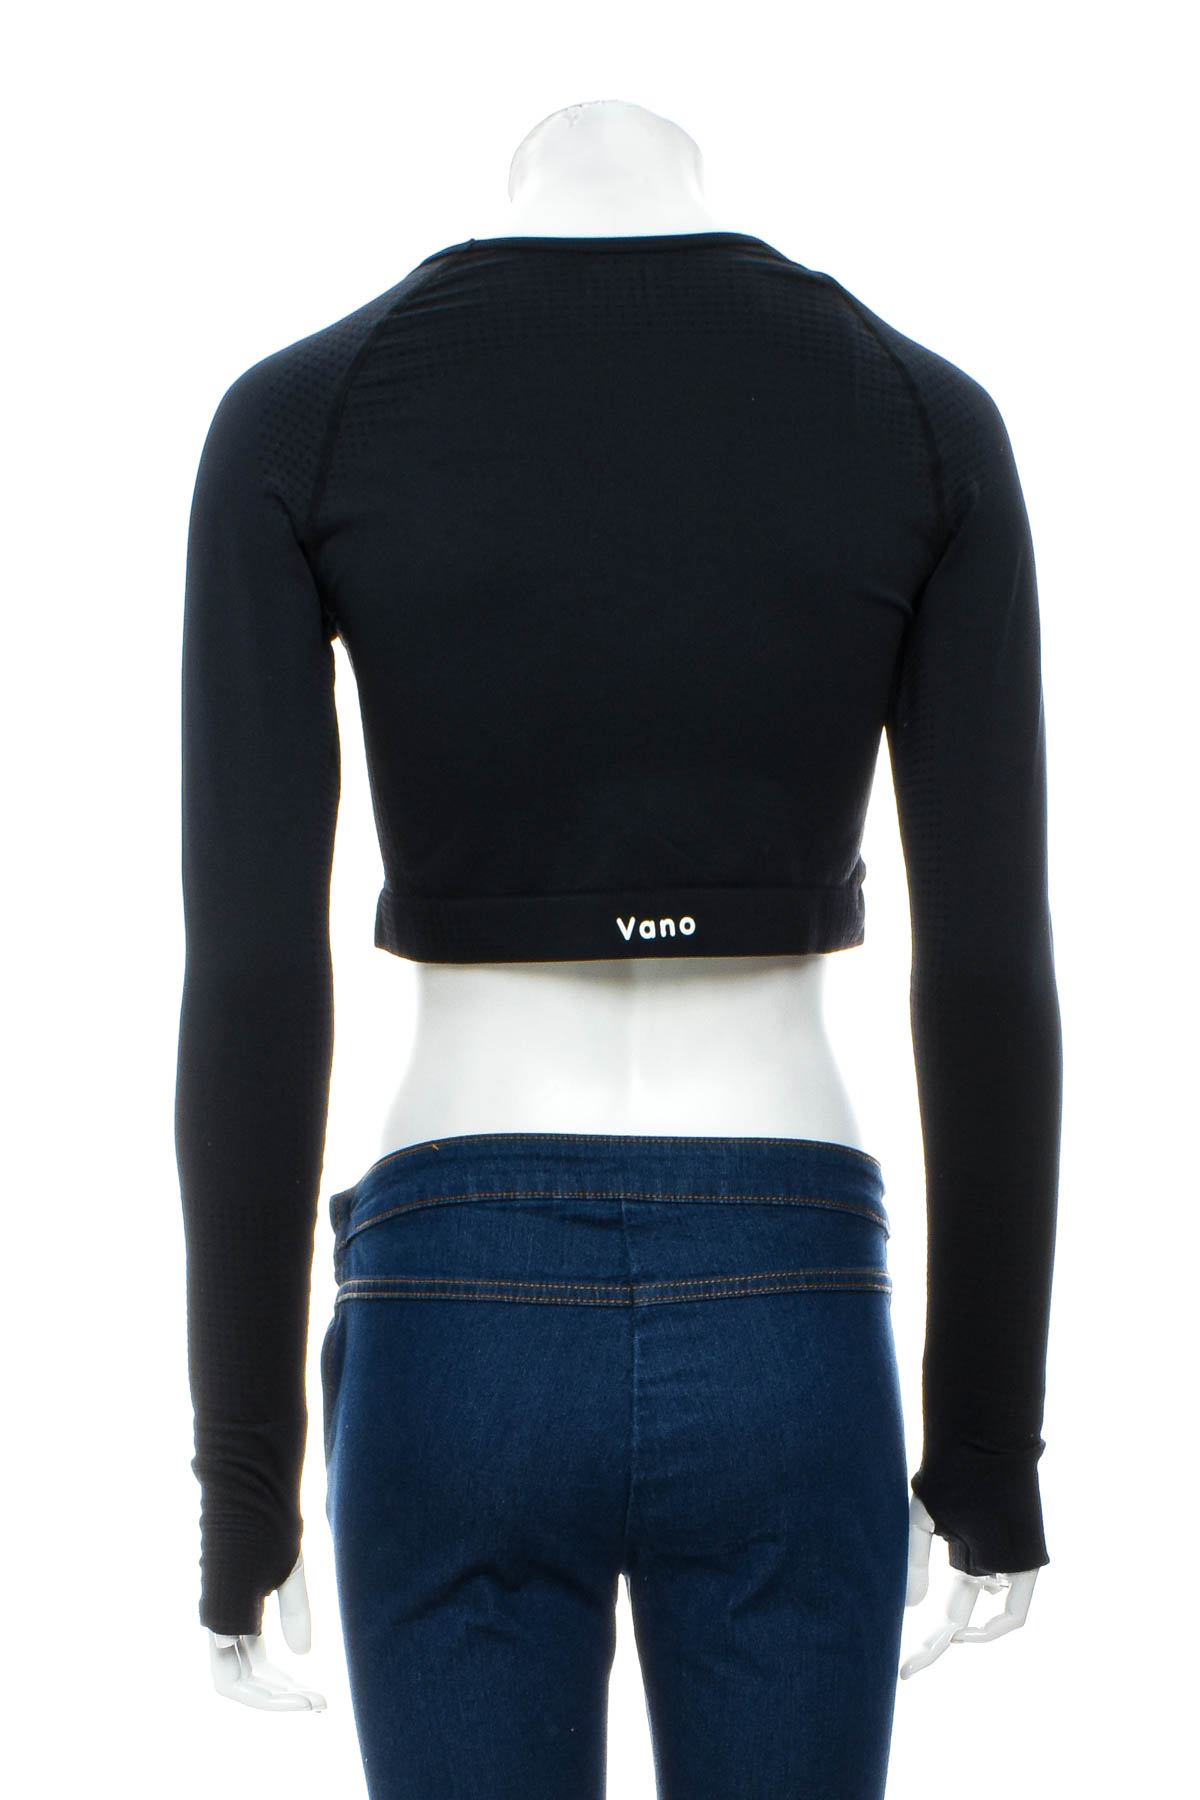 Дамска спортна блуза - VANO Wear - 1